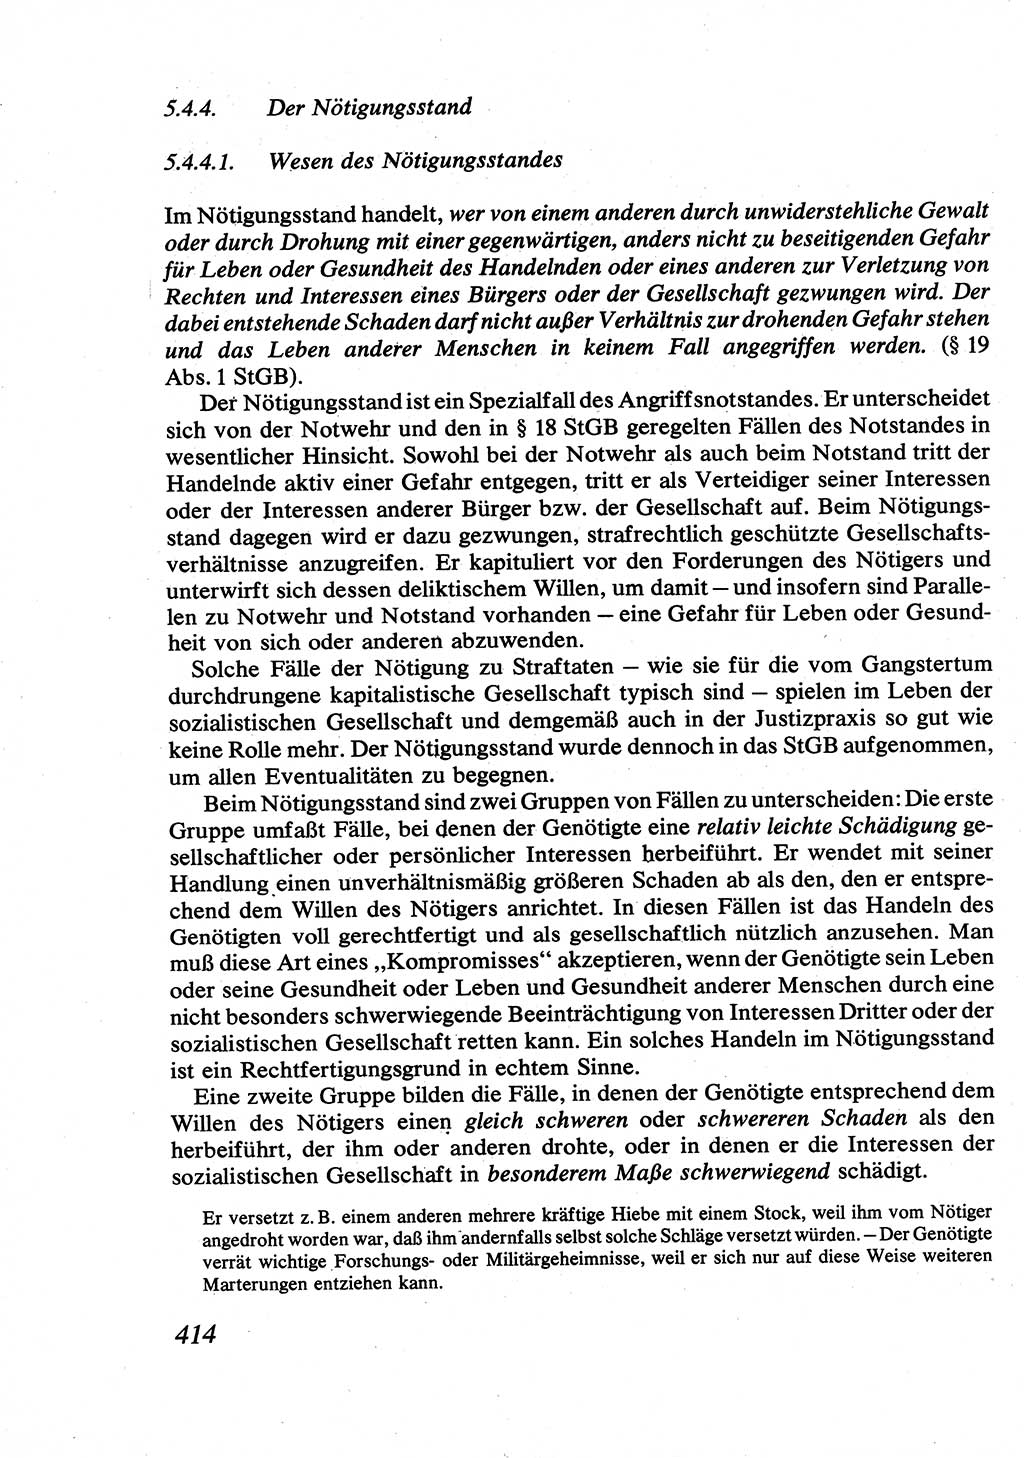 Strafrecht [Deutsche Demokratische Republik (DDR)], Allgemeiner Teil, Lehrbuch 1976, Seite 414 (Strafr. DDR AT Lb. 1976, S. 414)